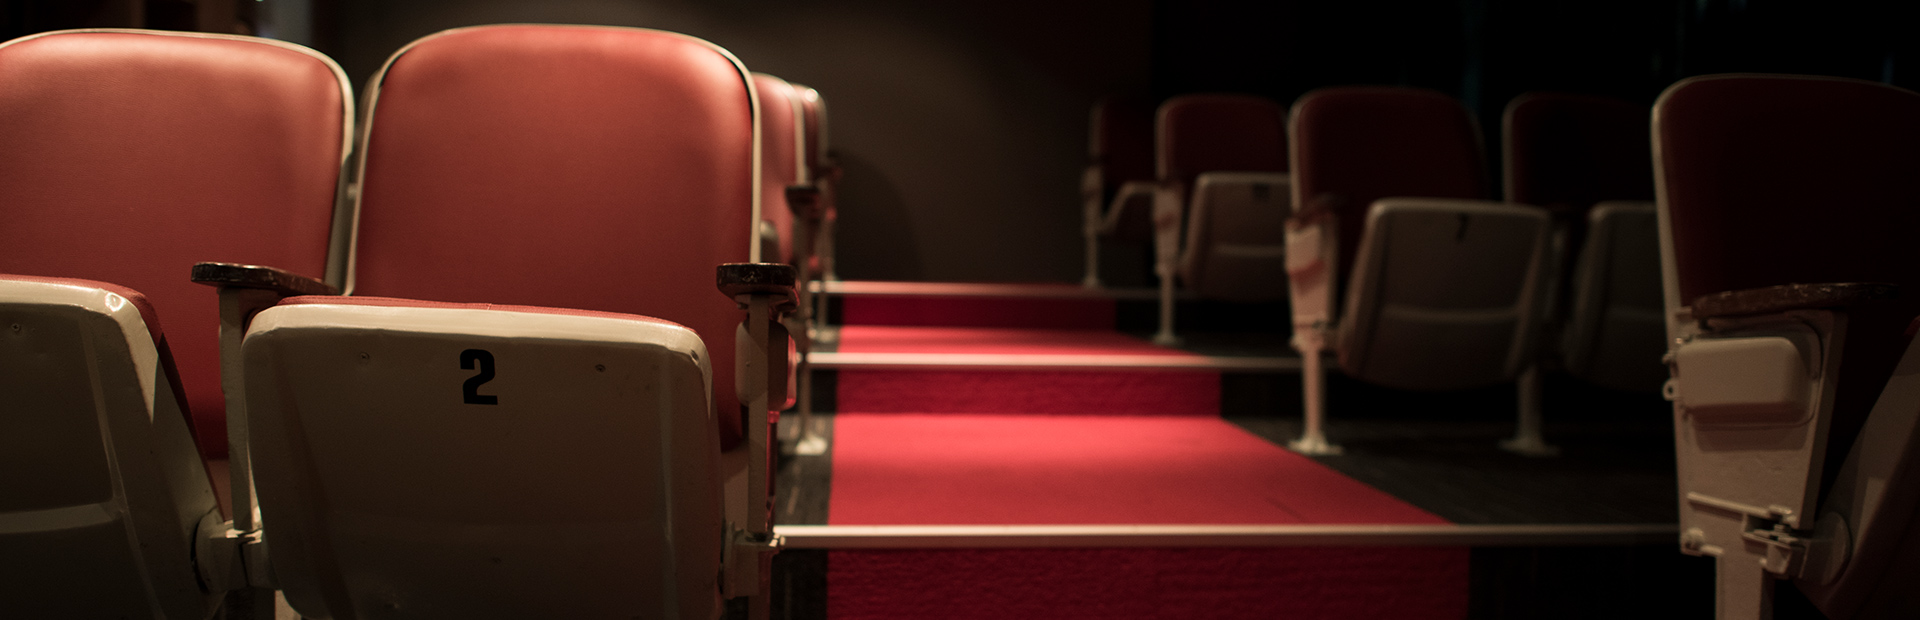 Rząd krzeseł na widowni w teatrze, a obok przejście pomiędzy rzędami krzeseł.     